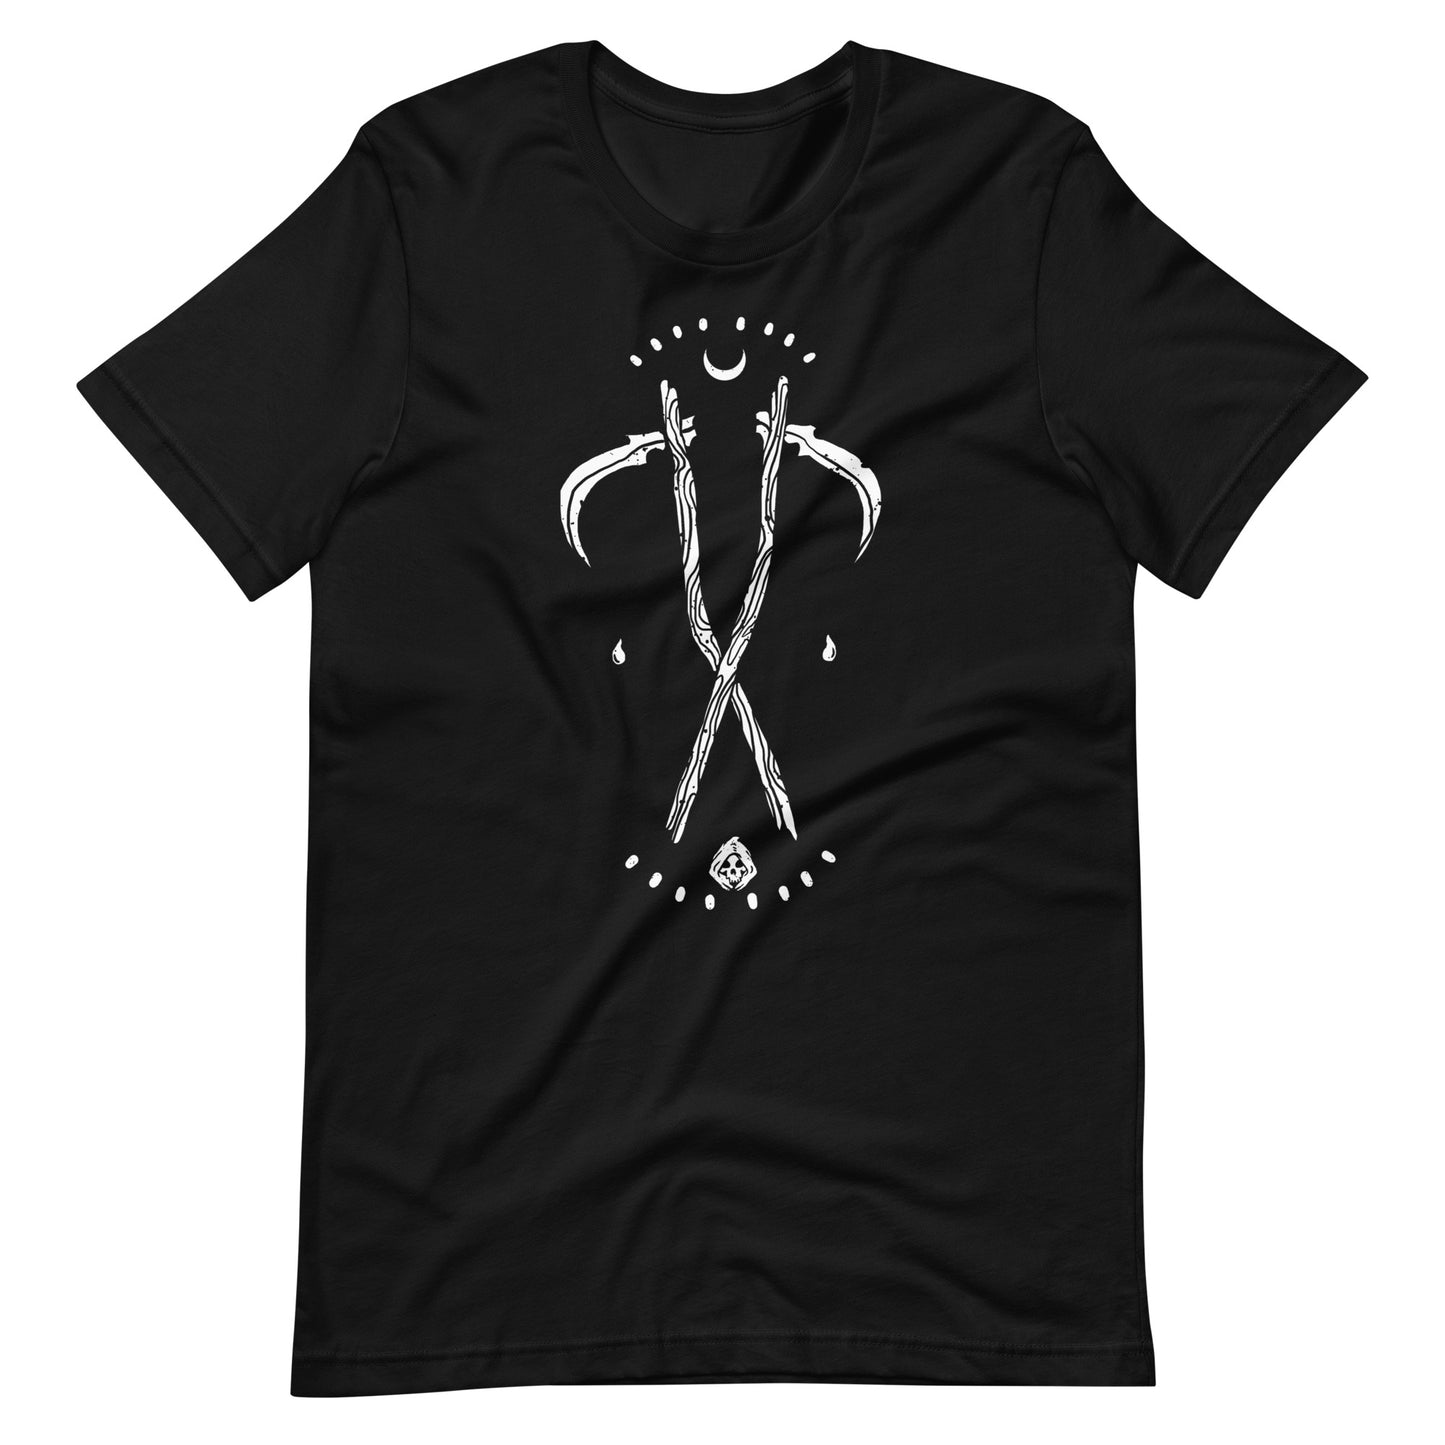 Grim - Men's t-shirt - Black Front